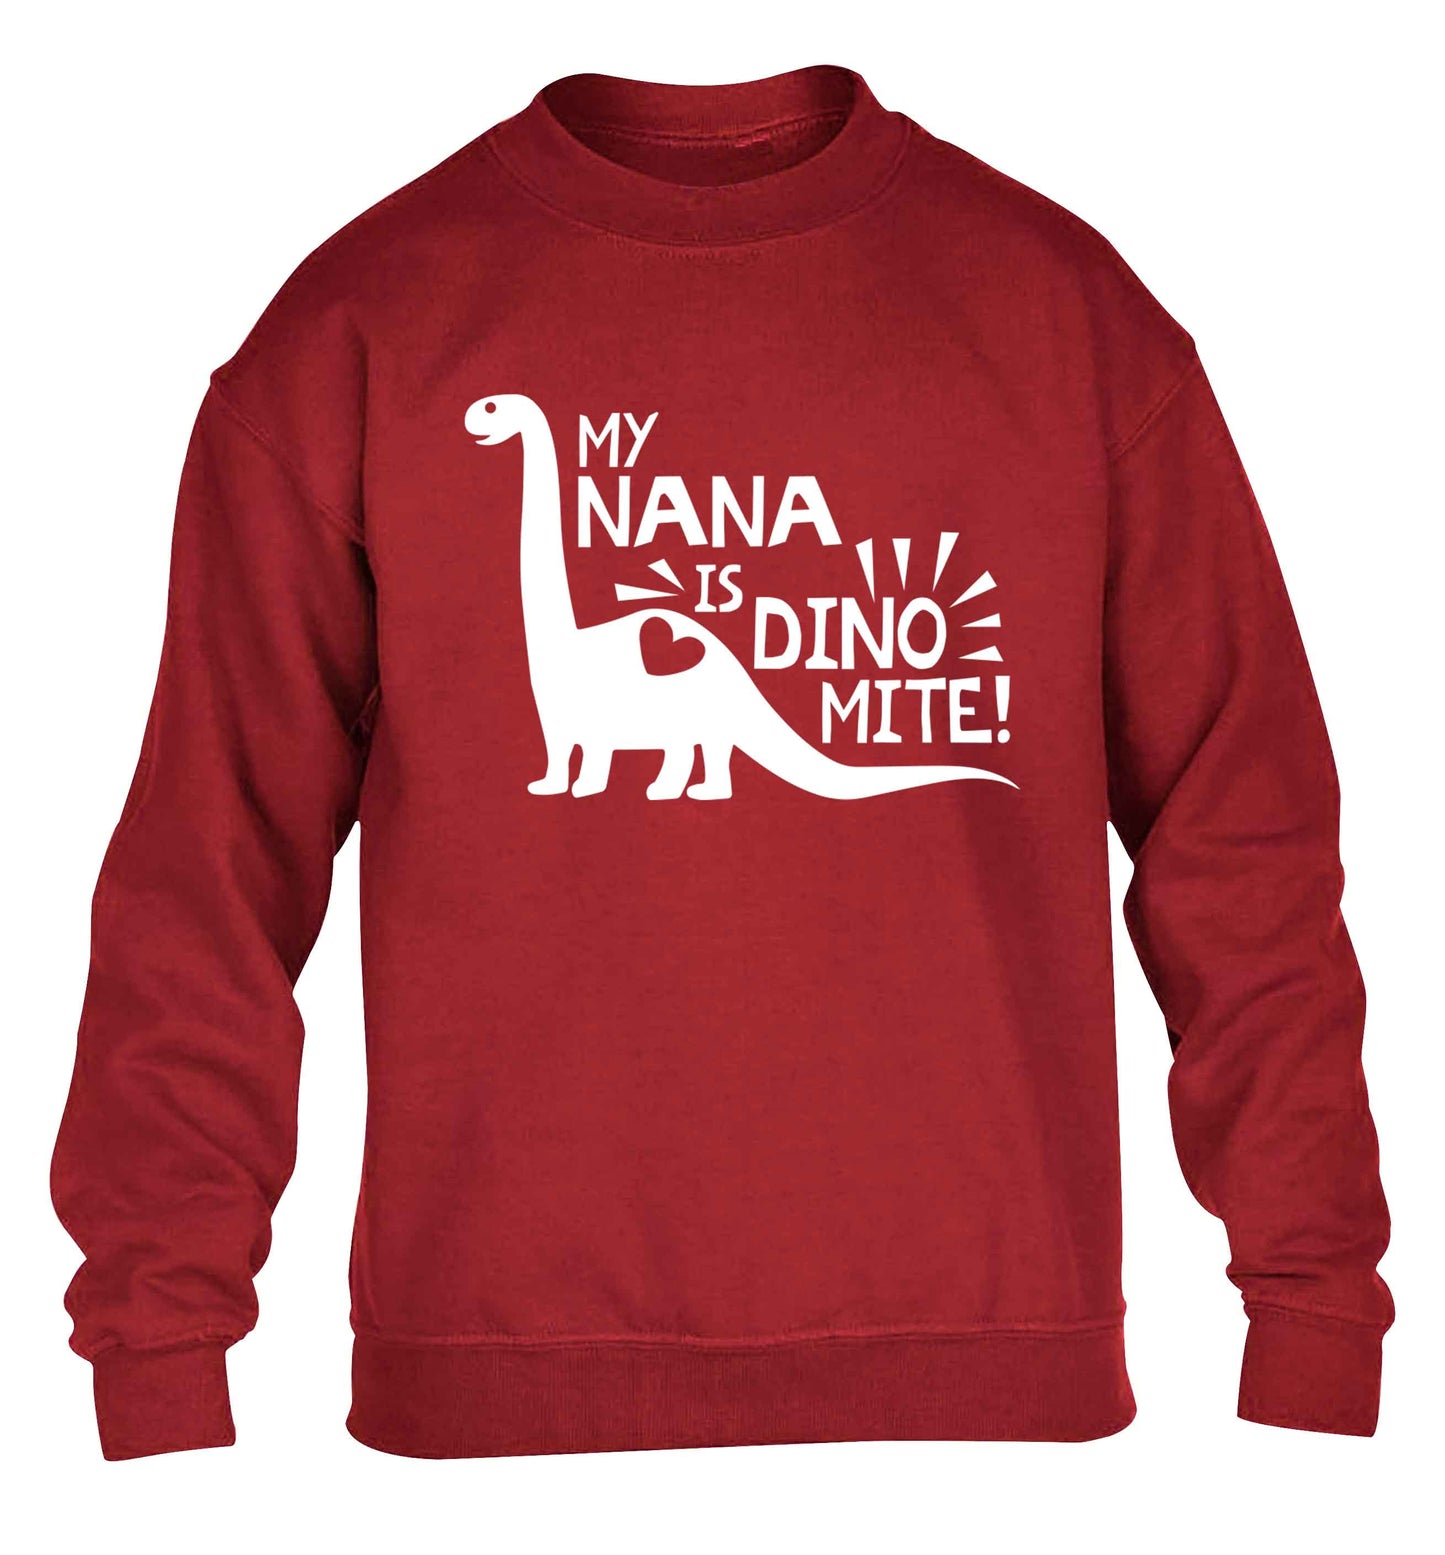 My nana is dinomite! children's grey sweater 12-13 Years